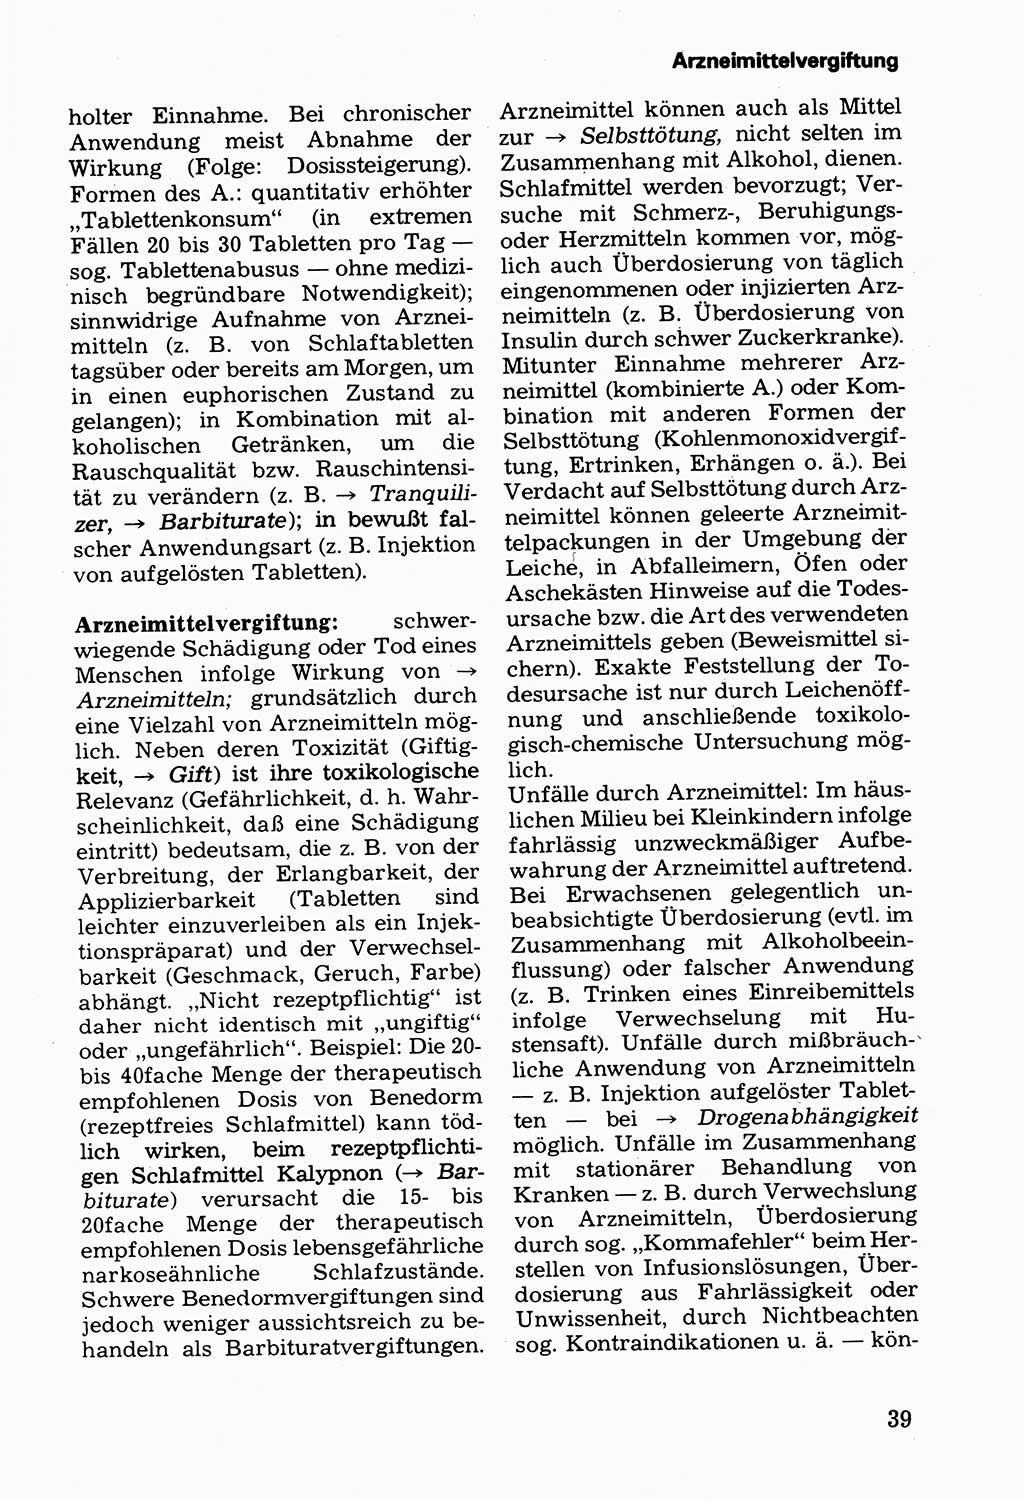 Wörterbuch der sozialistischen Kriminalistik [Deutsche Demokratische Republik (DDR)] 1981, Seite 39 (Wb. soz. Krim. DDR 1981, S. 39)